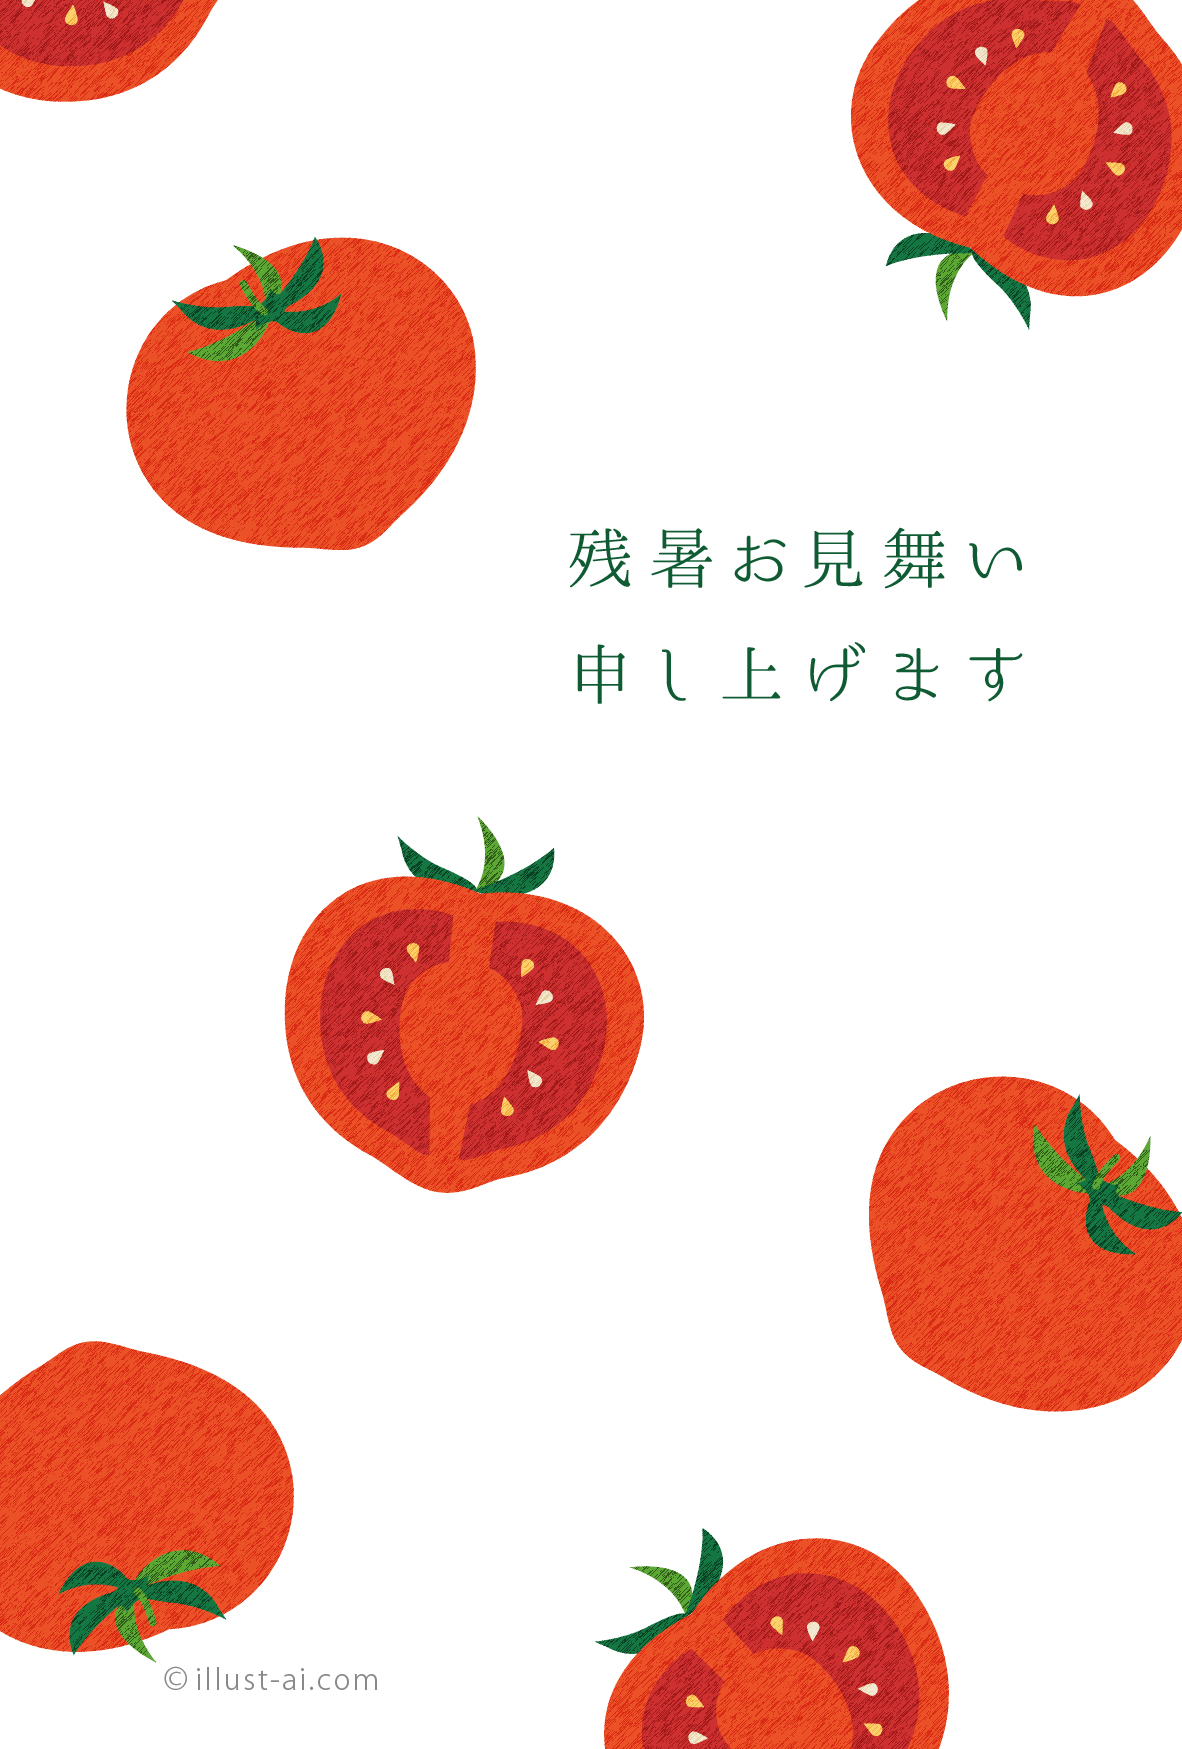 綺麗な赤いトマトのはがきデザイン 残暑お見舞い ポストカード イラスト素材サイト イラストareira Postcard Template